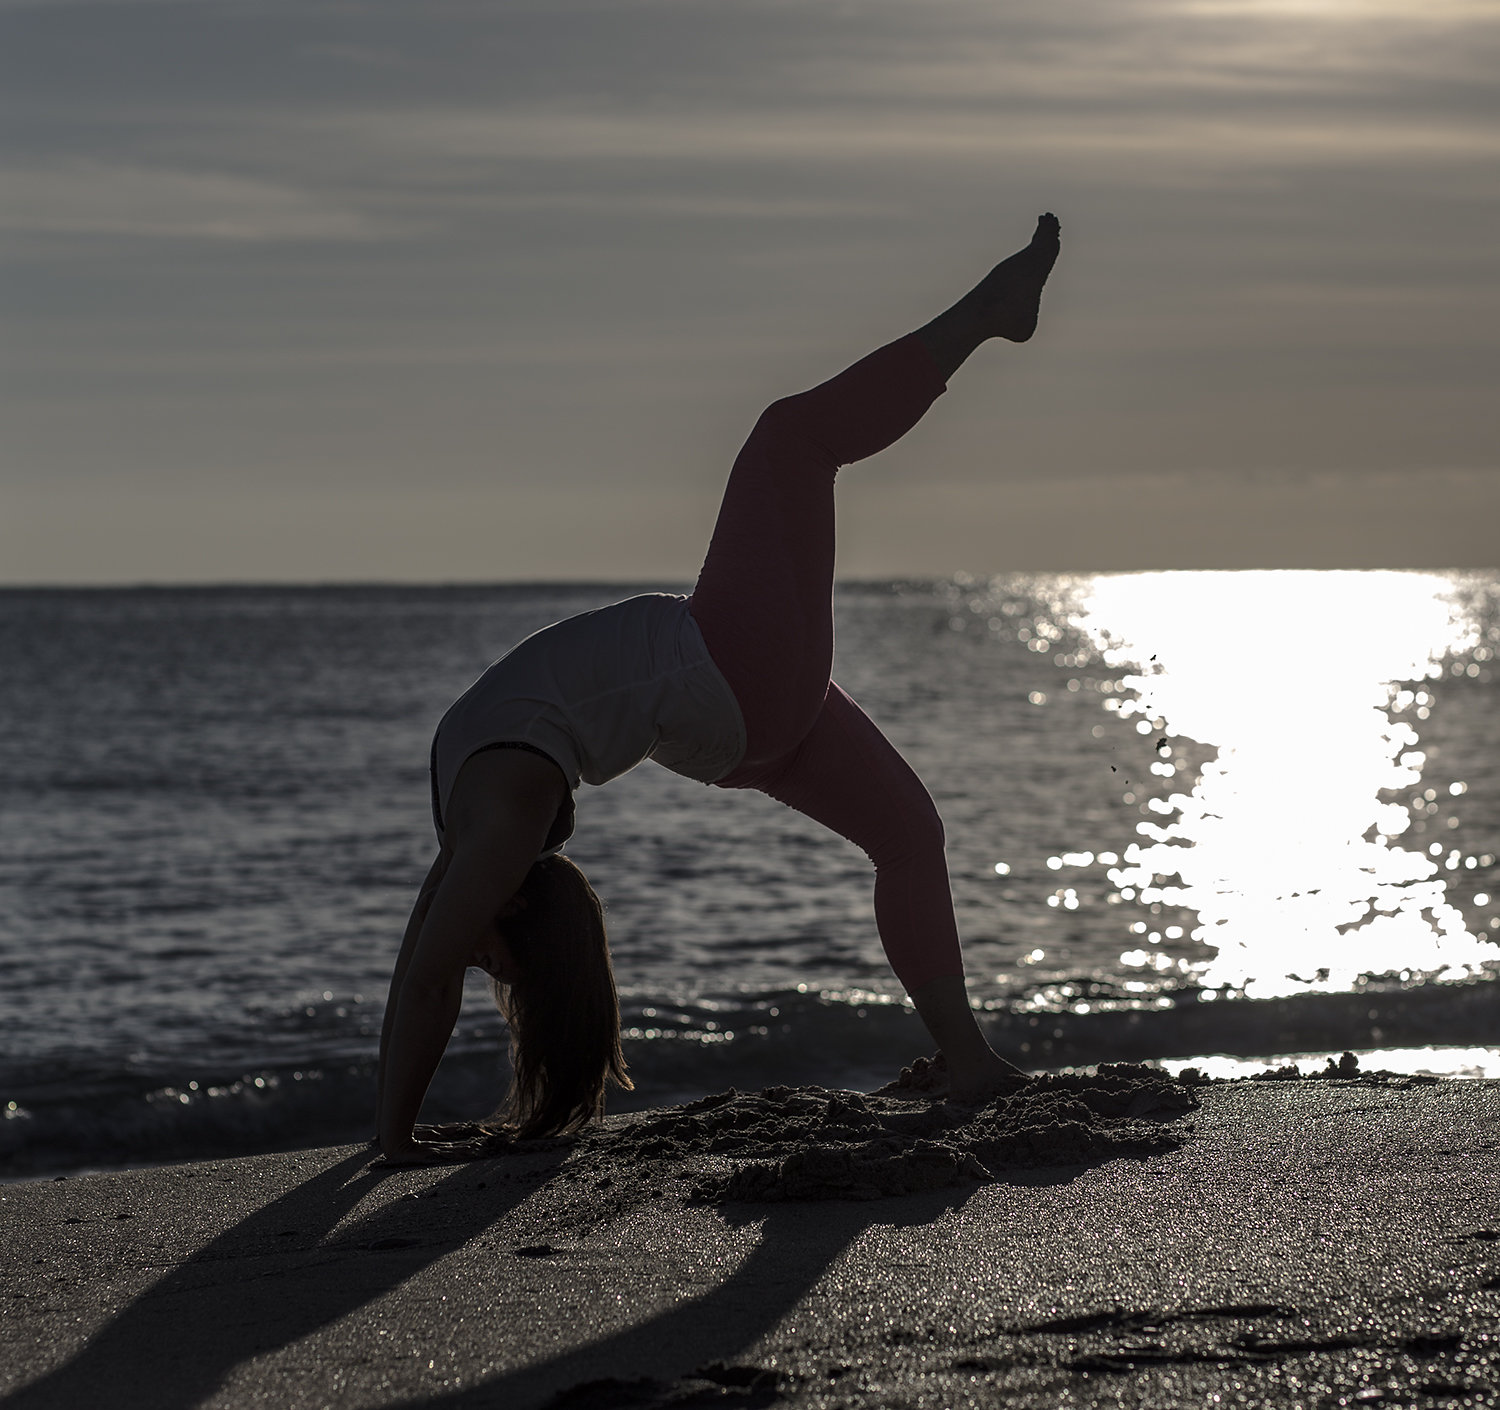 Home  Hampton Beach Yoga & Mindfulness